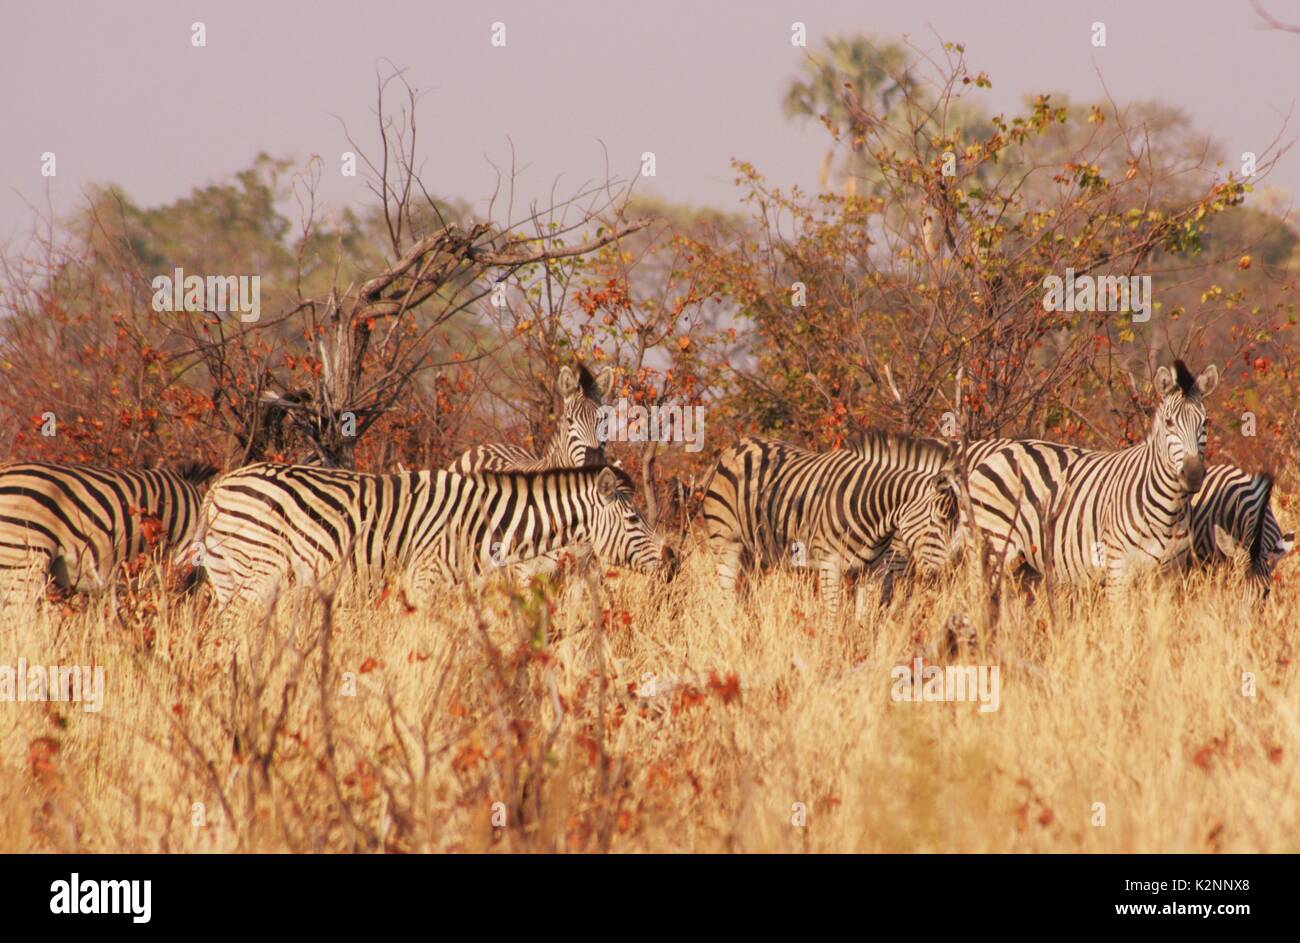 A herd of grazing Burchell's Zebras in the Okavango Delta, Botswana Stock Photo